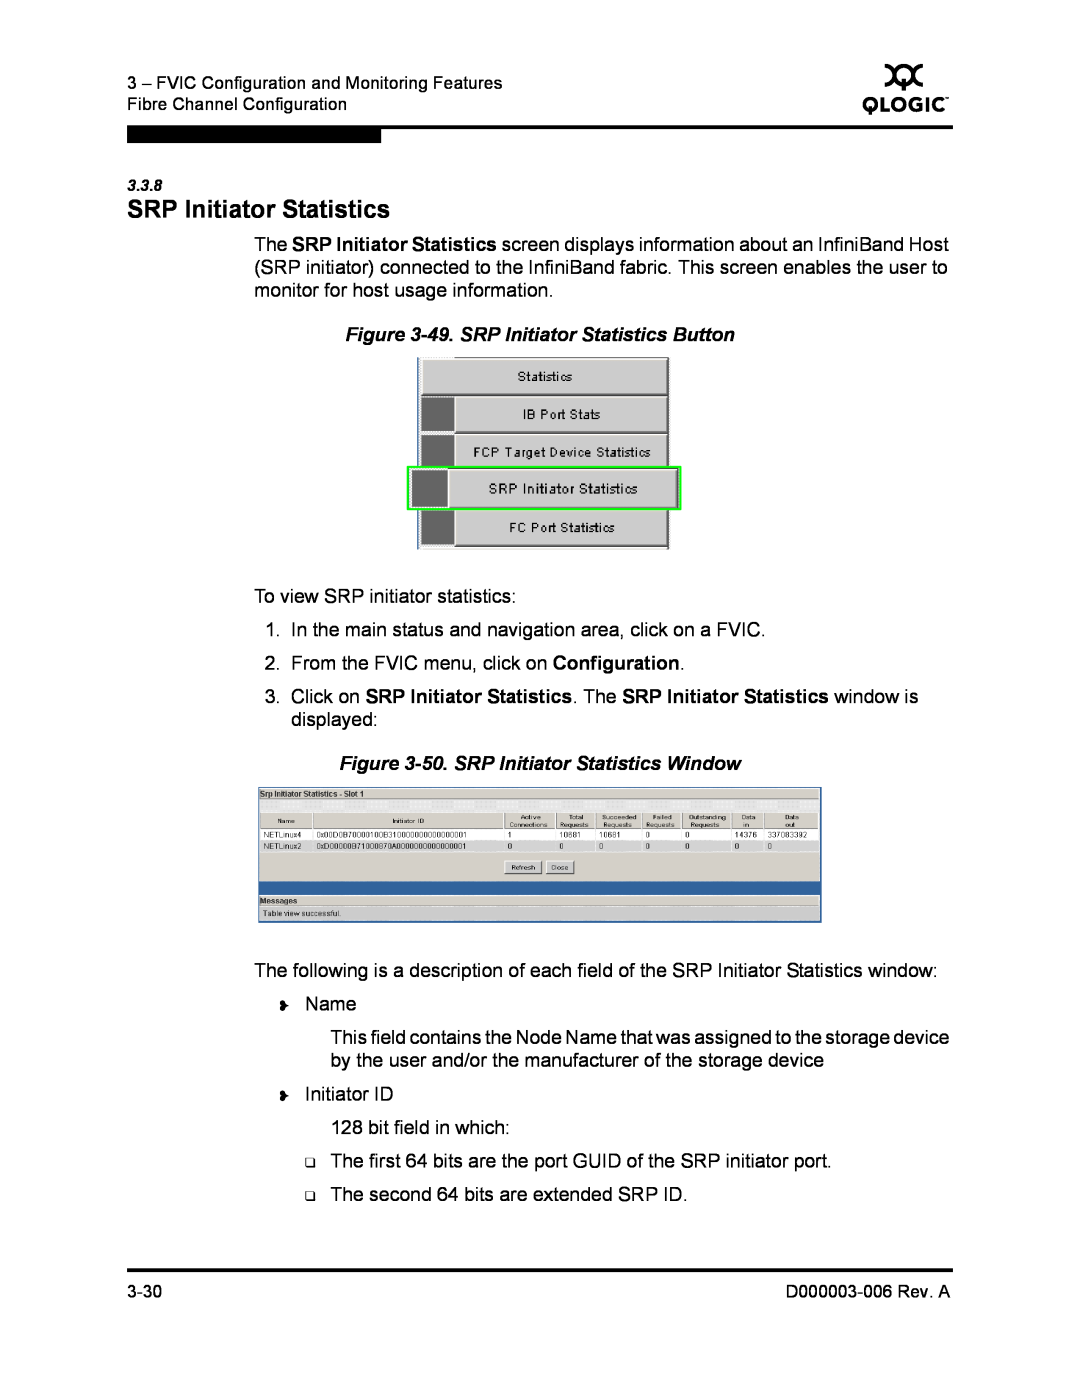 Q-Logic 9000 manual 49. SRP Initiator Statistics Button, 50. SRP Initiator Statistics Window 